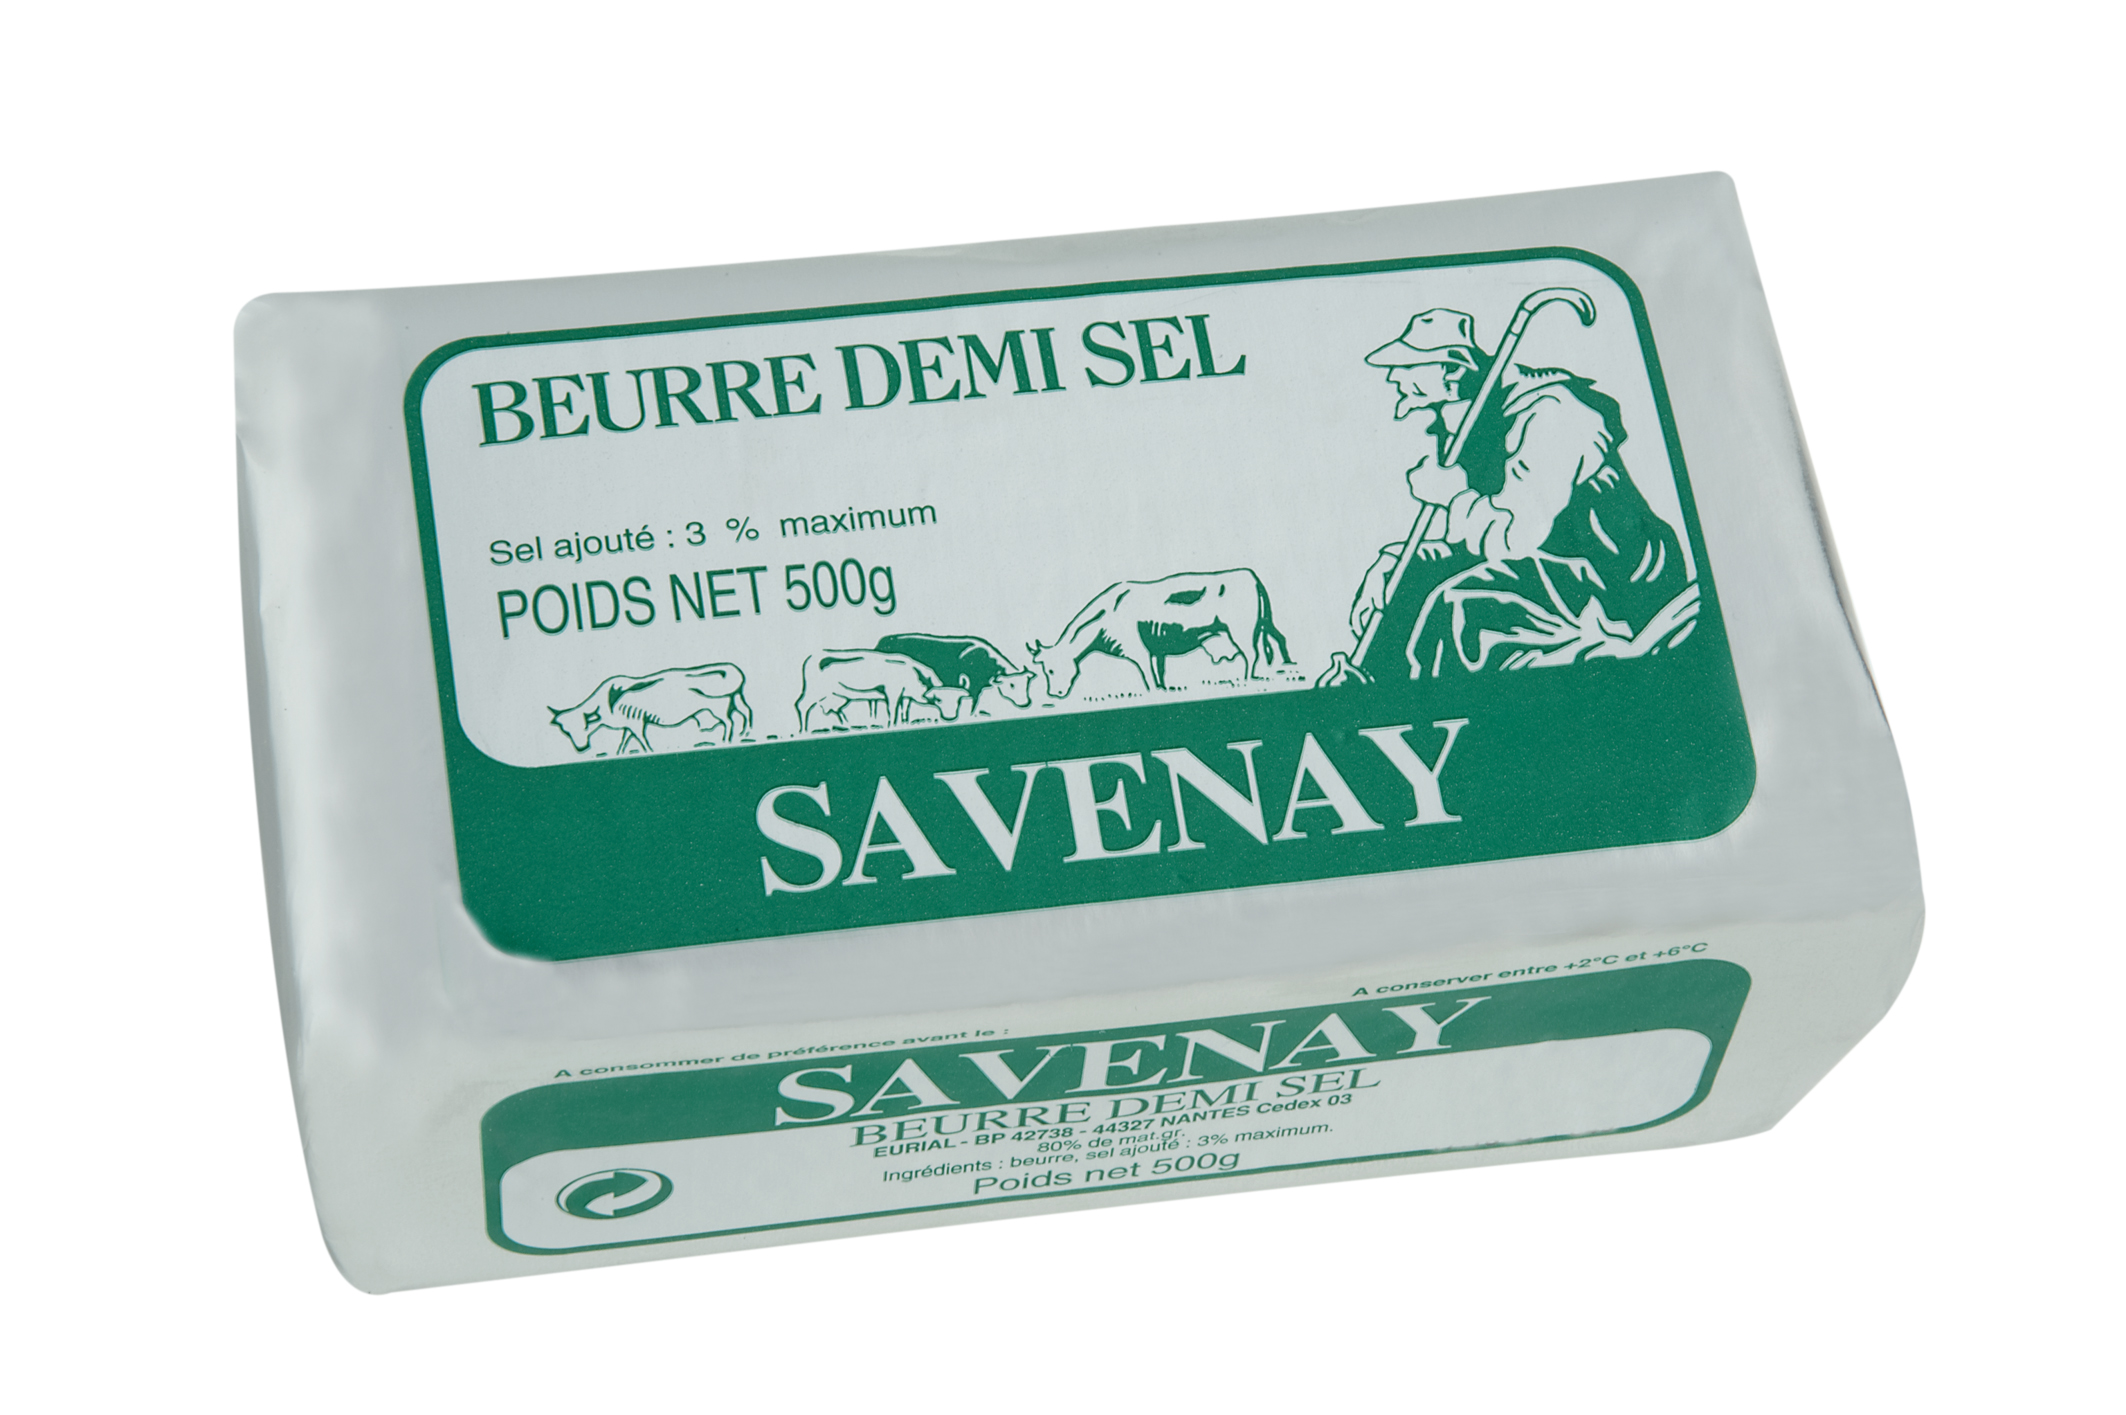 Beurre De Savenay 1/2 Sel (France) En Plaquette -500g